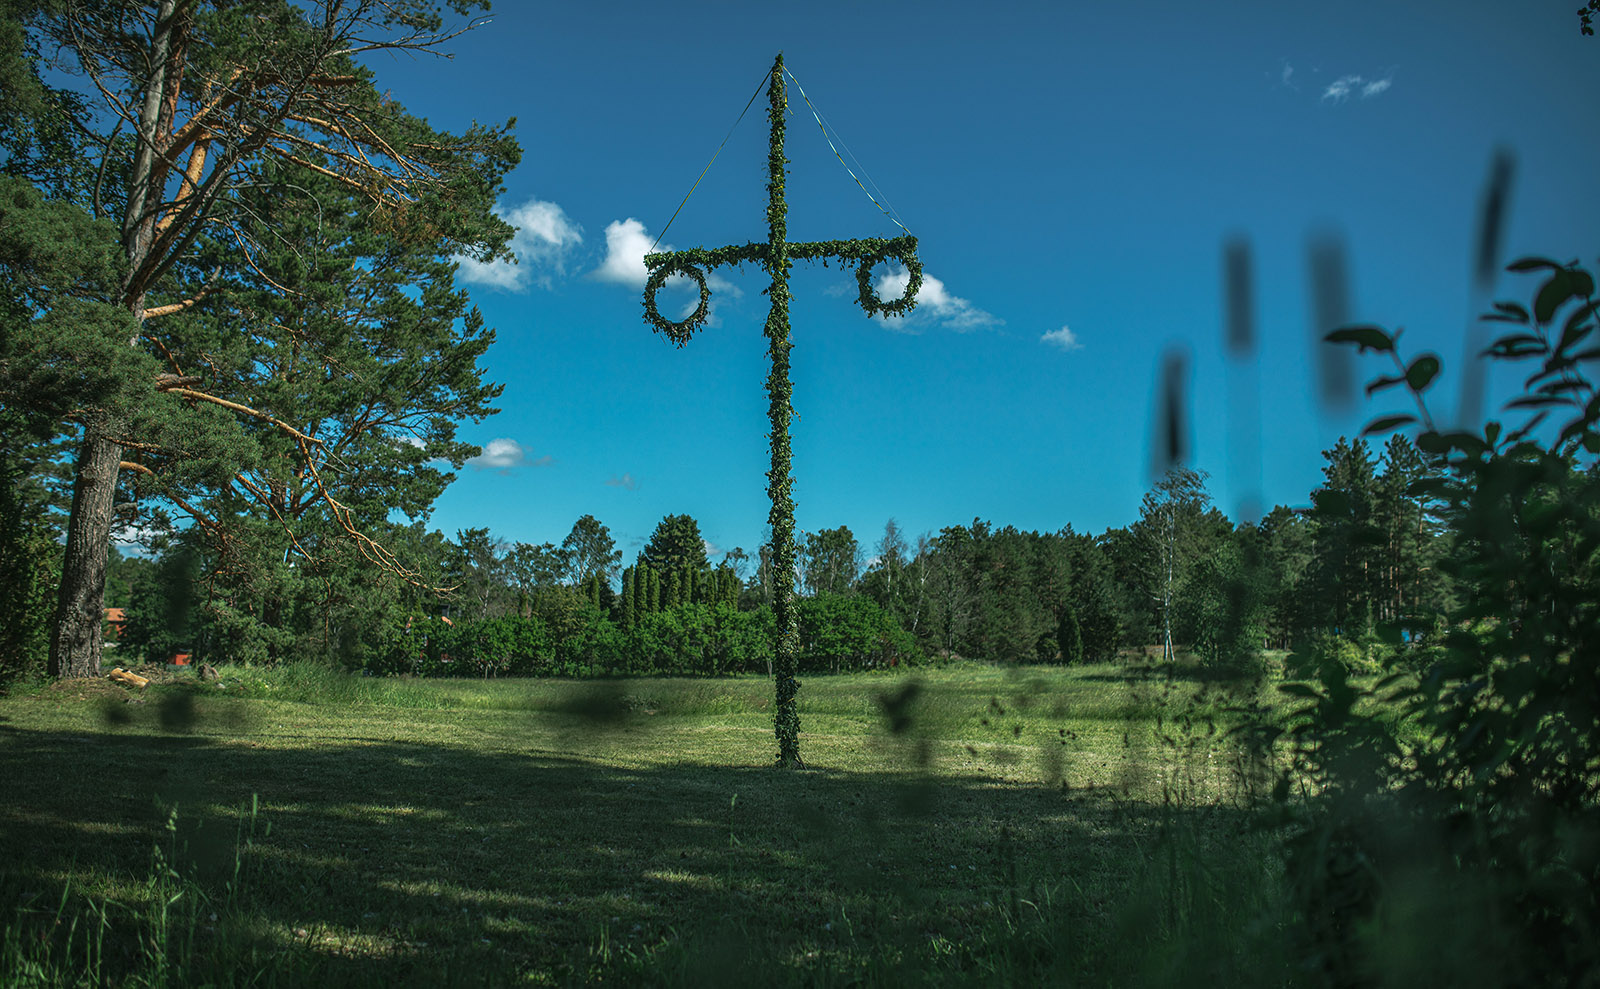 midsommar pole in a green field in sweden